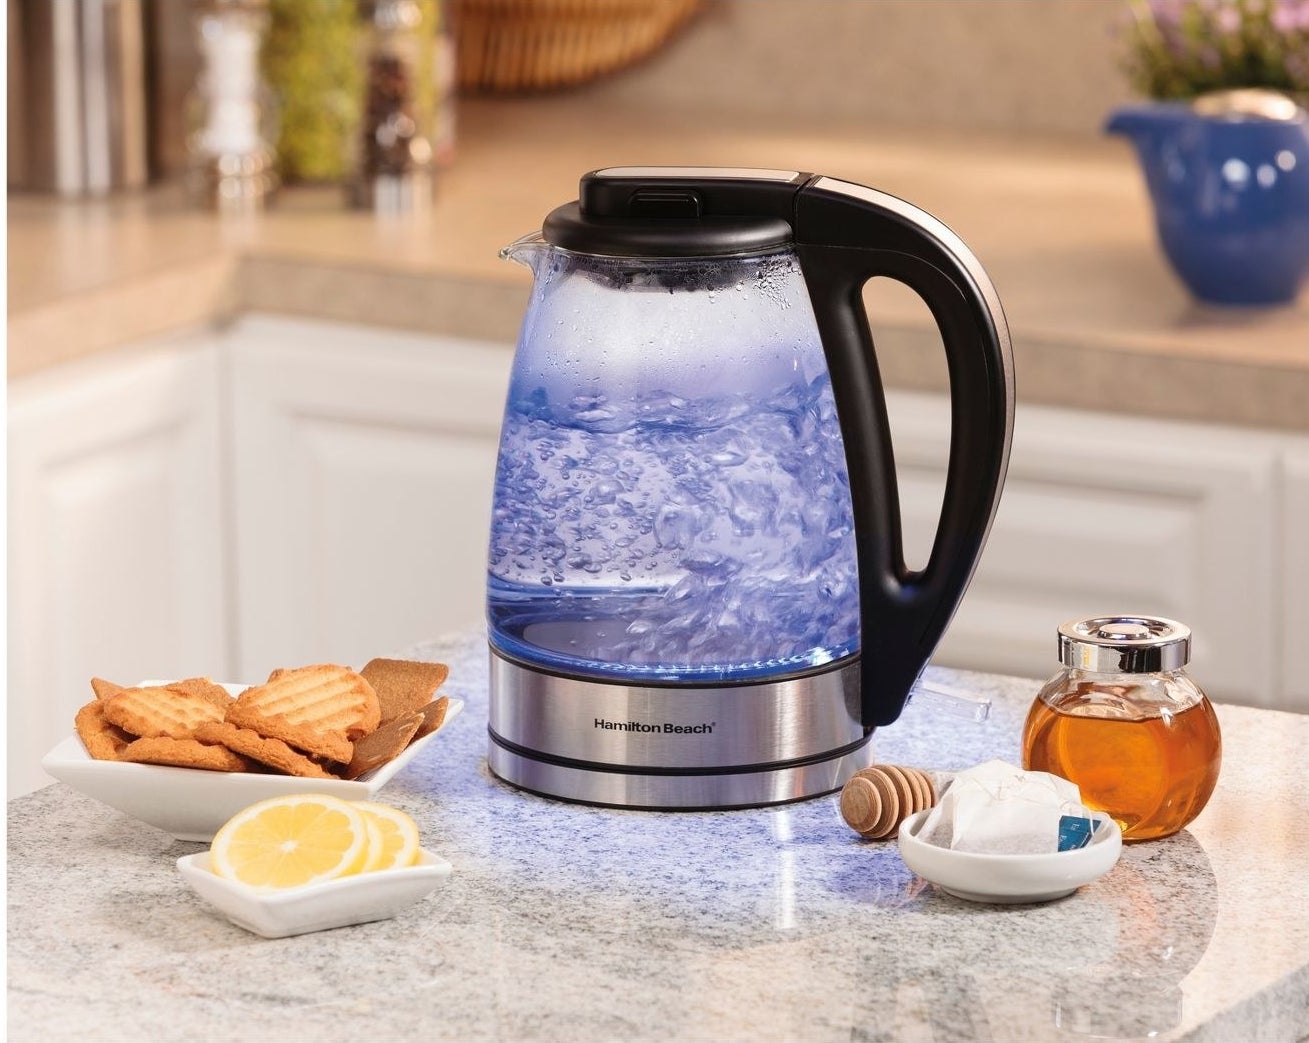 hamilton beach electric tea kettle with a blue light